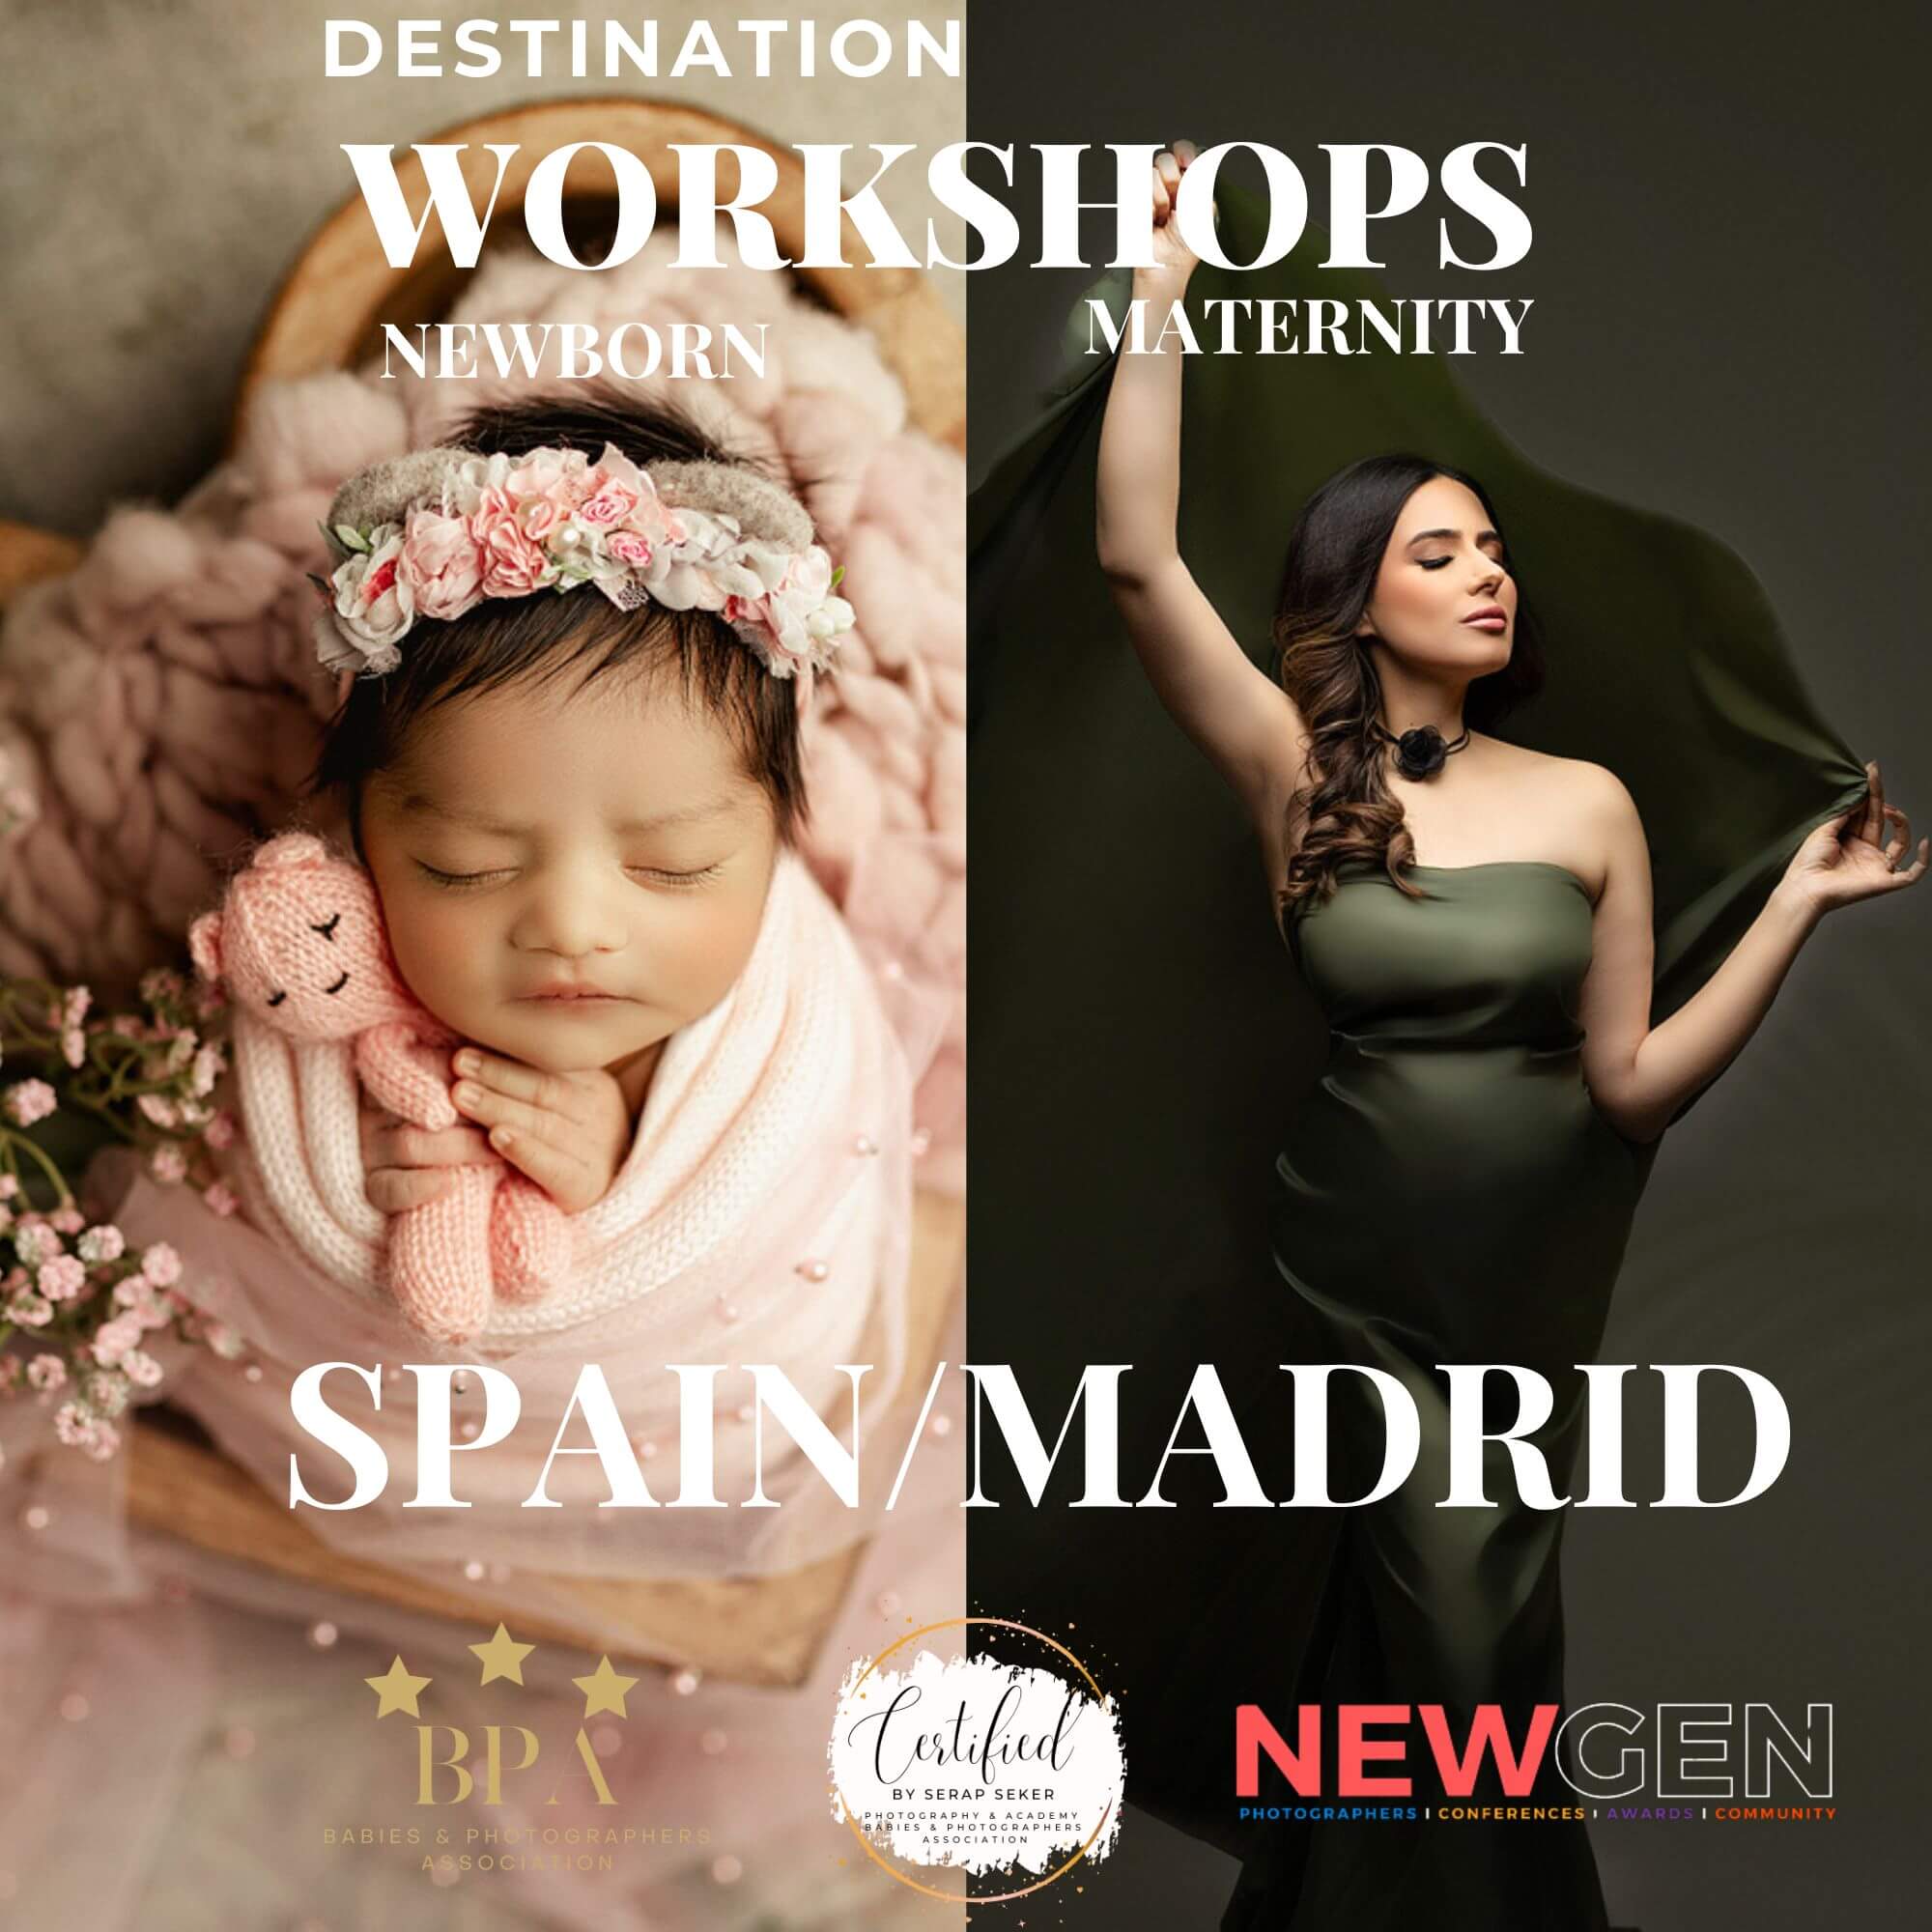 Spain/Madrid Workshop